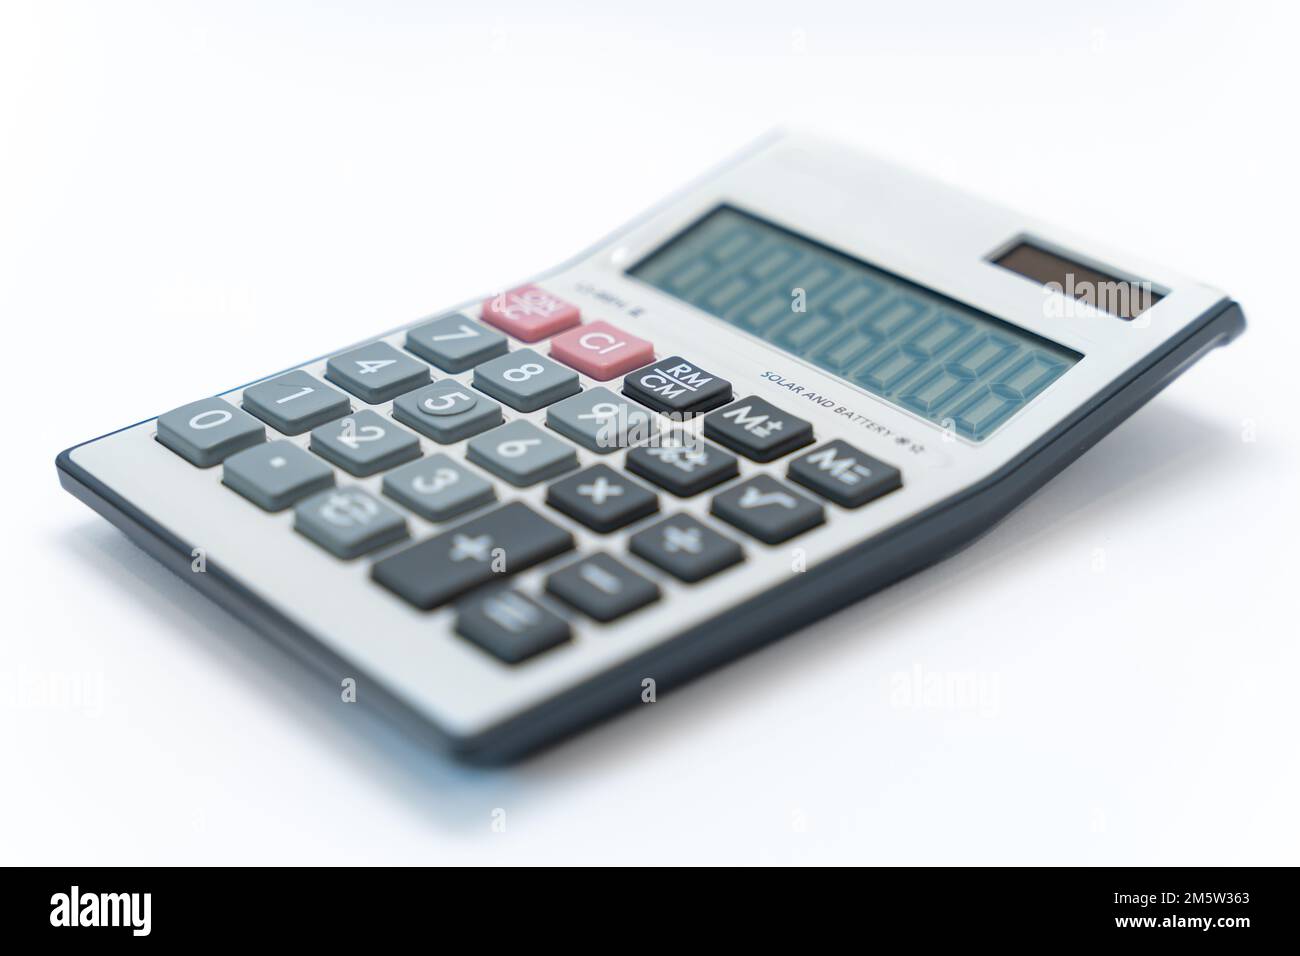 Una calcolatrice digitale bianca isolata su sfondo bianco. Calcolatrice con funzione solare e batteria. Foto Stock